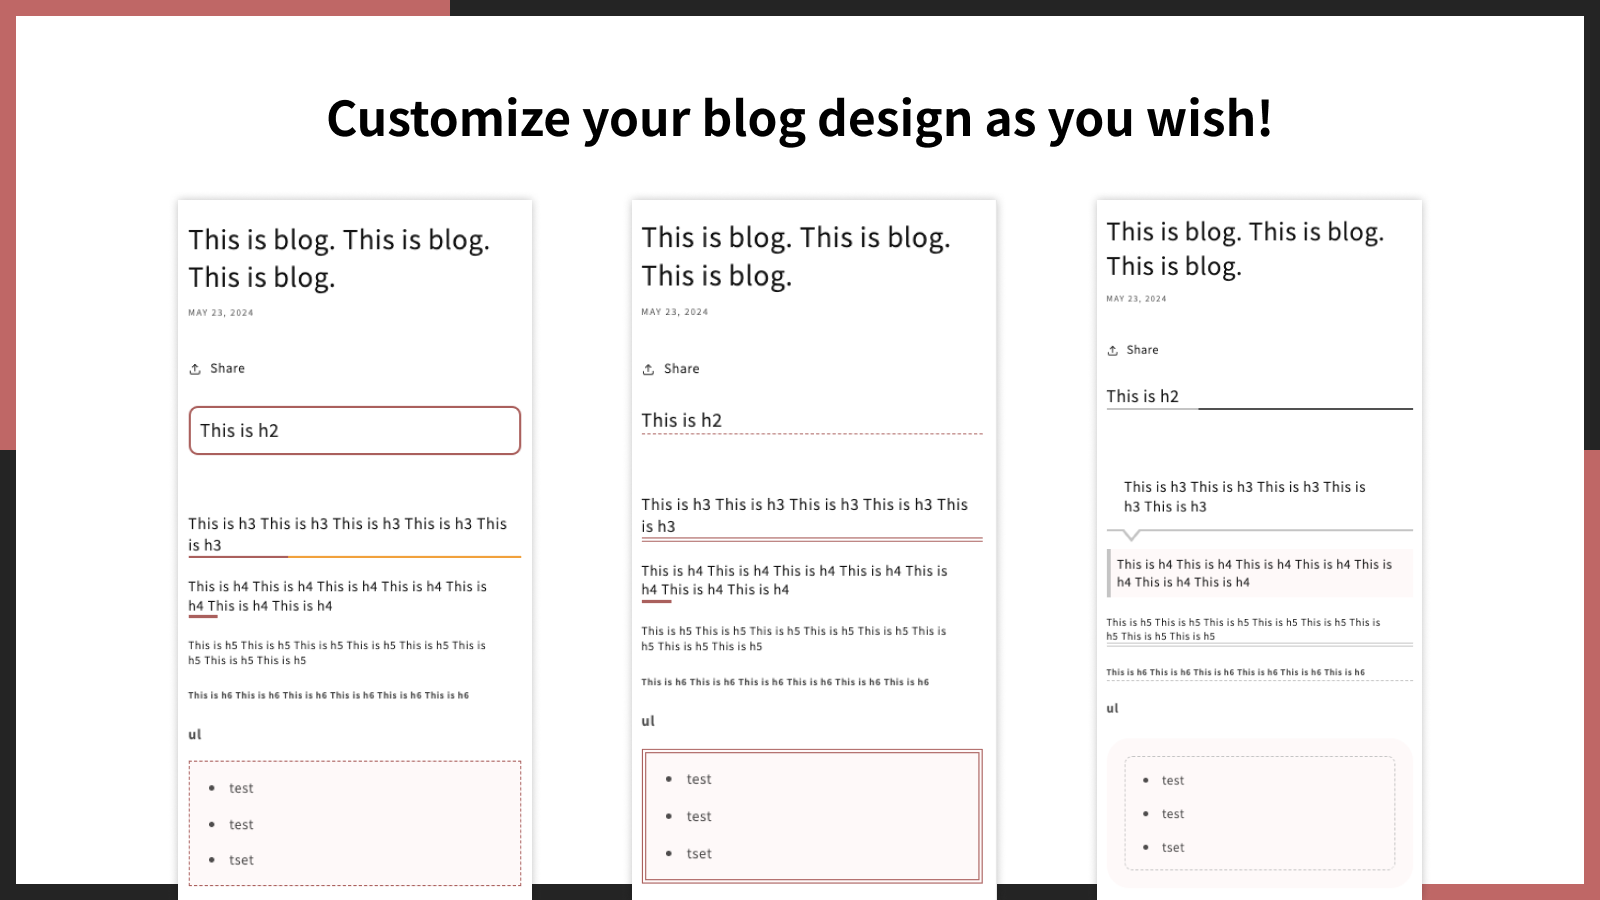 Personaliza el diseño de tu blog como desees.